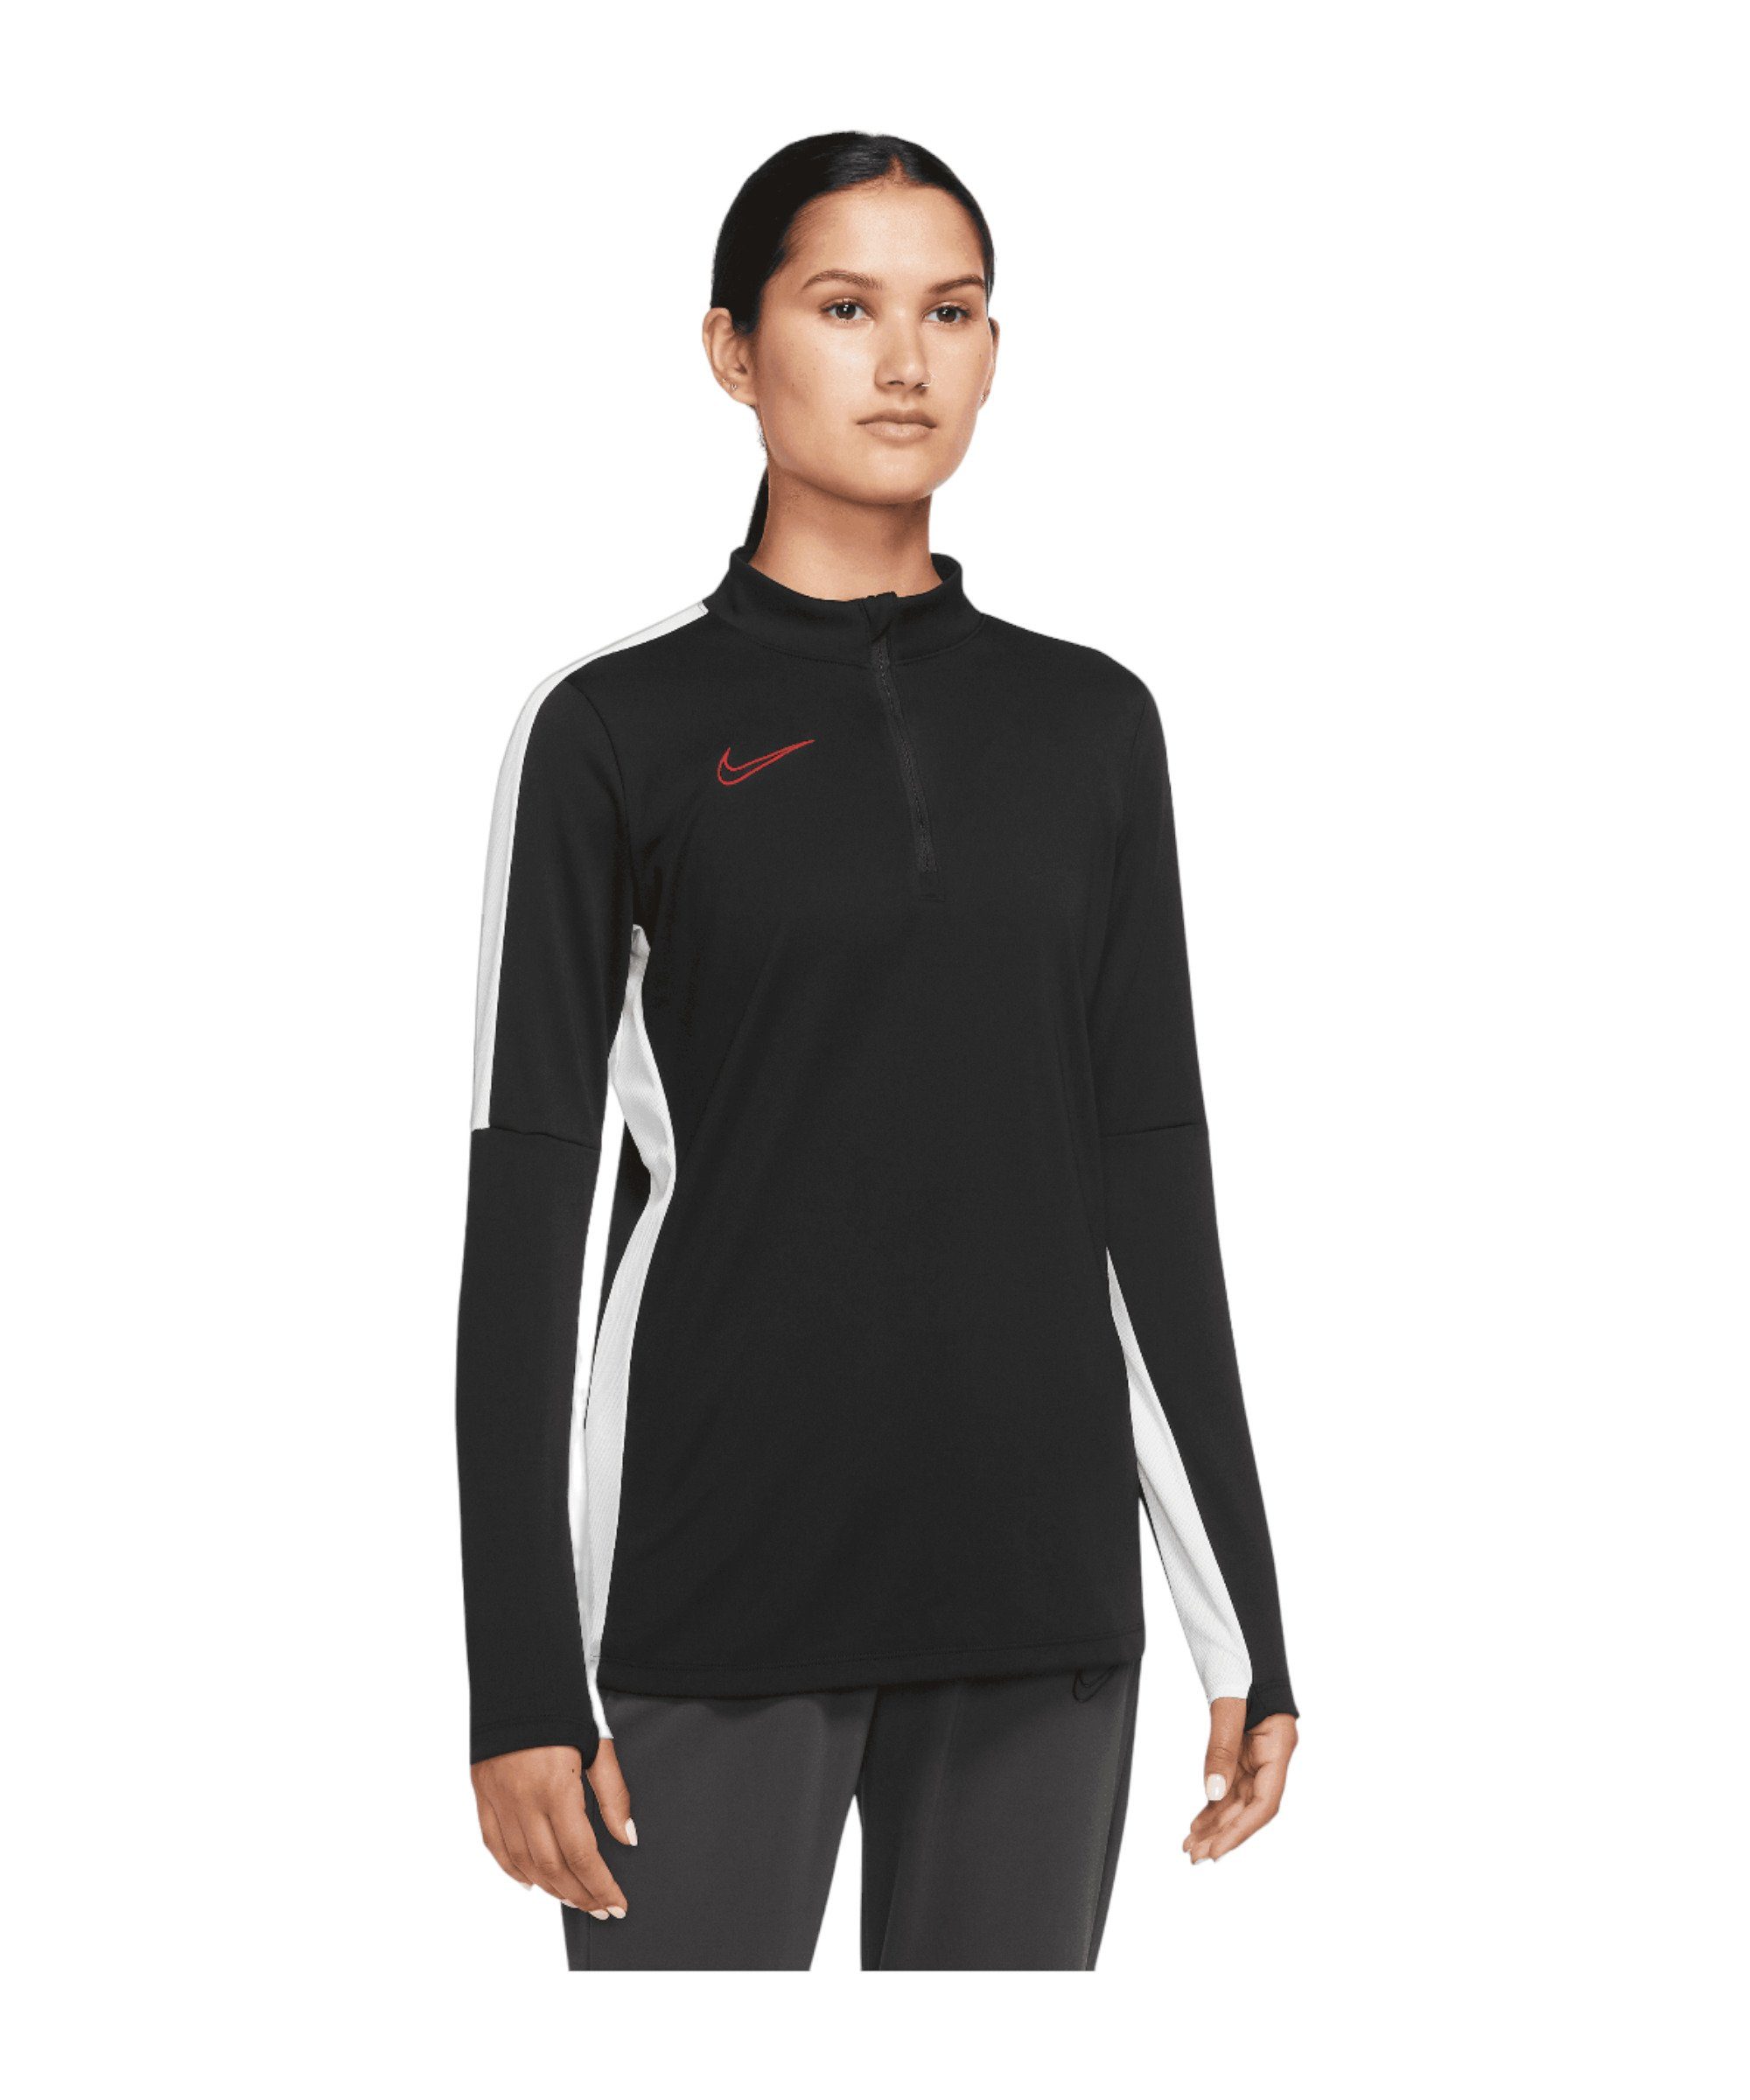 Academy Sweatshirt schwarzweissrot Nike Sweatshirt Damen